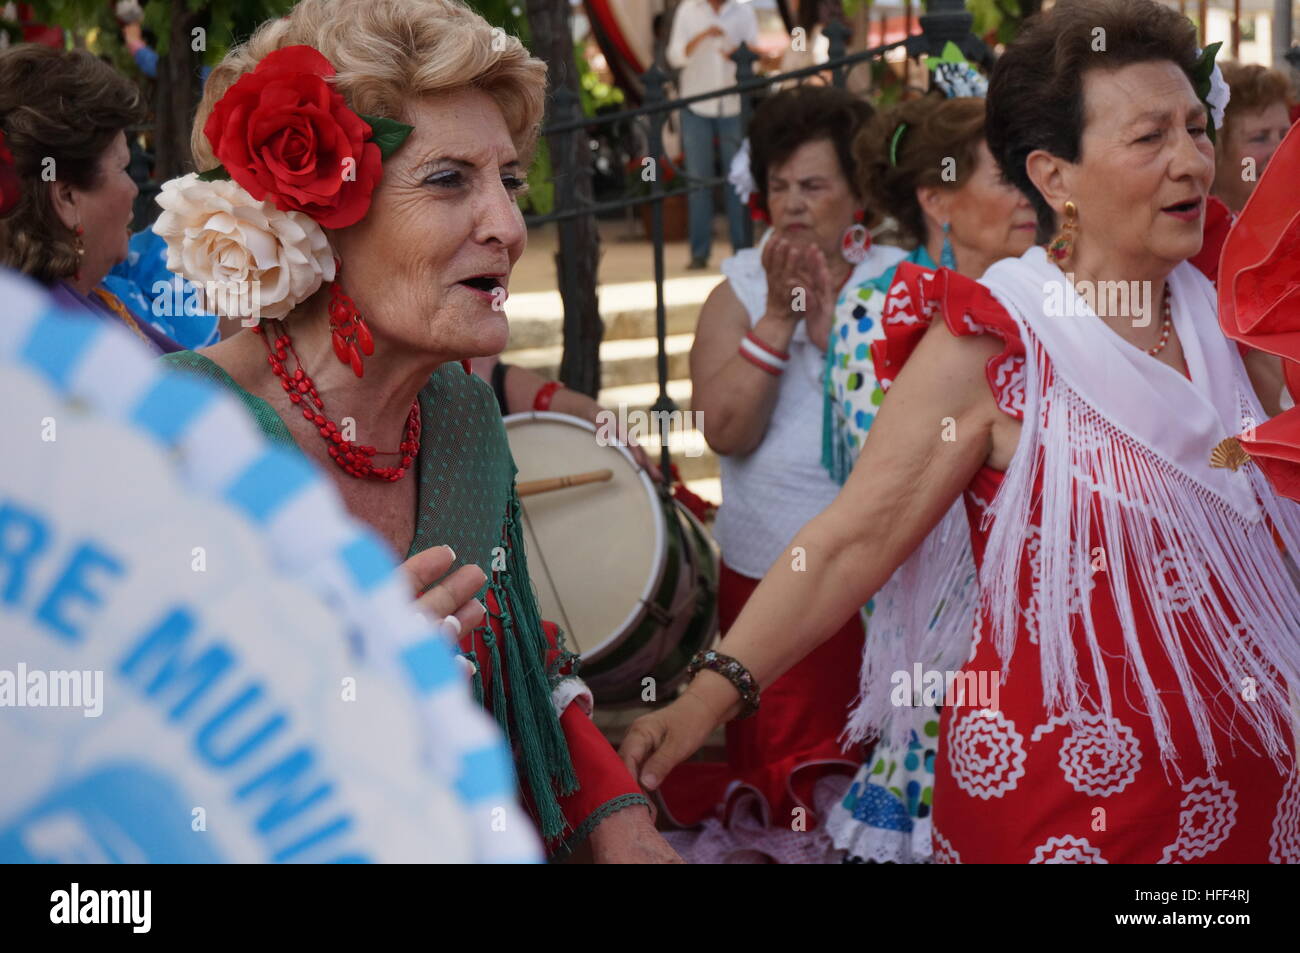 Andalusischen Frauen während der Feria in Jerez - 05.08.2013 - Spanien / Andalusien / Jerez De La Frontera - Frauen in der andalusischen Kultur, Feria in Jerez De La Fronteria. Ein paar Frauen tanzen Sevillanas, folkloristische Tänze.  Frauen haben eine wichtige Rolle bei der Vertretung der andalusischen Kultur während der Ferias. Ein besonderer Tag ist sie sogar gewidmet. Durch ihre bunten Outfits und Accessoires, das Flamencotanzen und singen können sie in einer machistischen Gesellschaft, Anmut, Charme, Freude und Stärke der andalusischen Traditionen verkörpern.    -Sandrine Huet / Le Pictorium Stockfoto